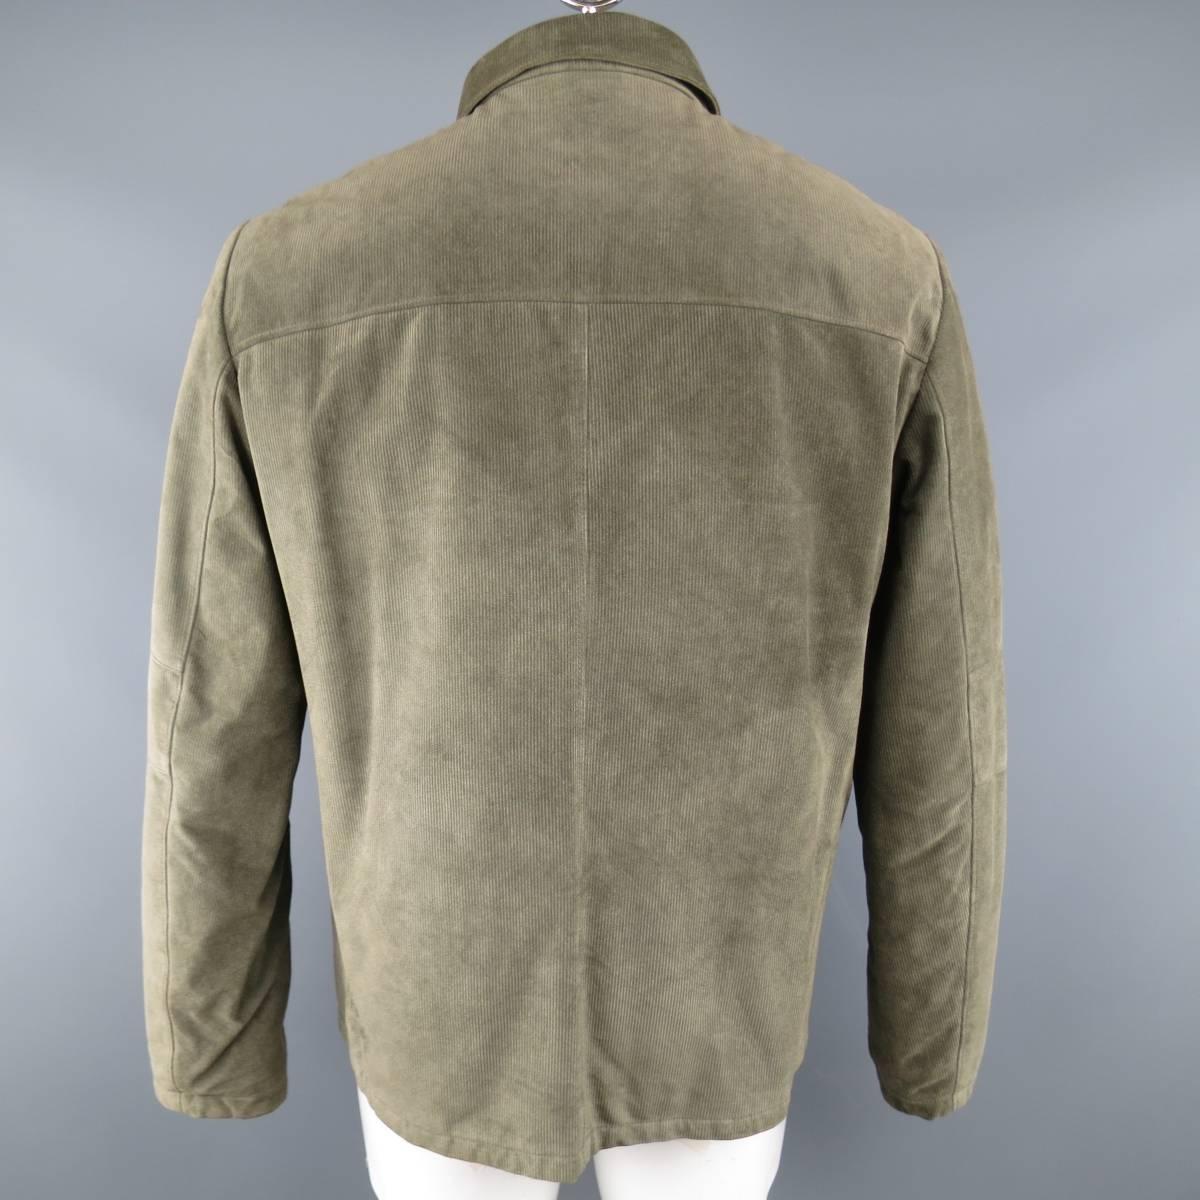 Men's LUCIANO BARBERA 44 Moss Green Corduroy Textured Suede Jacket 1